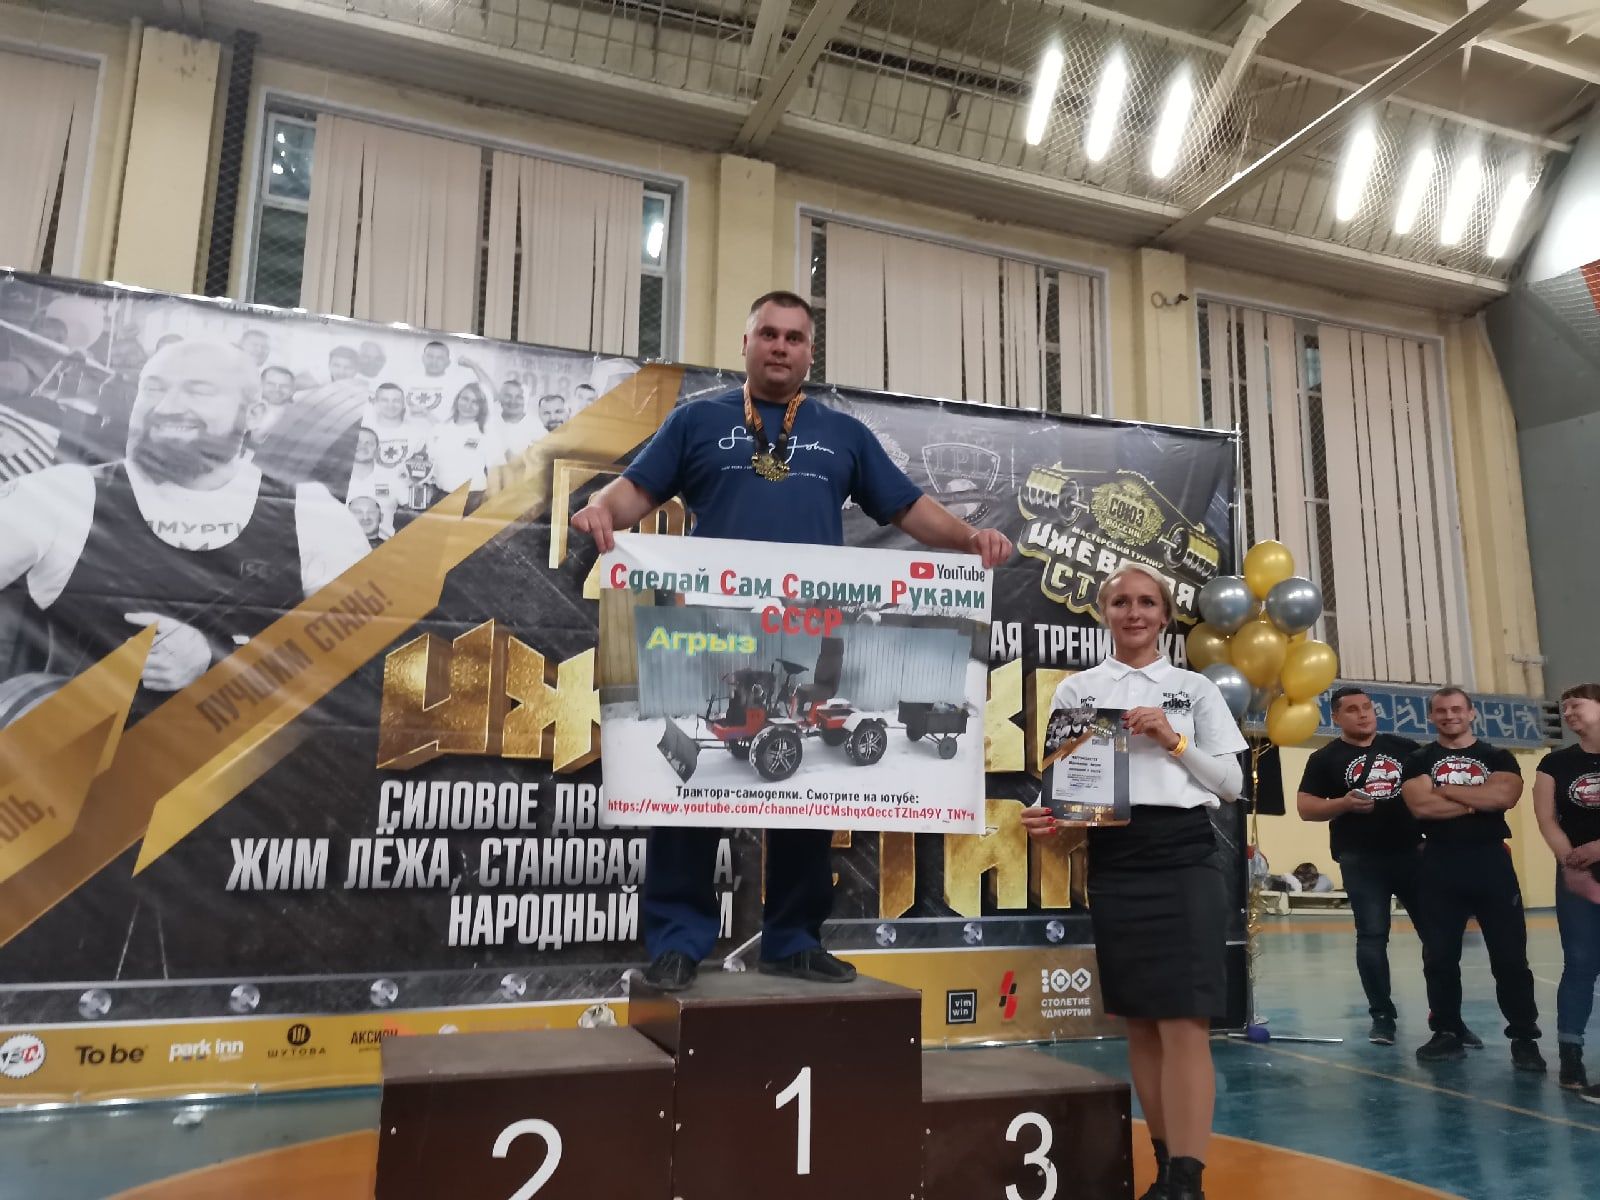 Наш земляк Антон Шушпанов стал призёром мастерского турнира "Ижевская сталь"